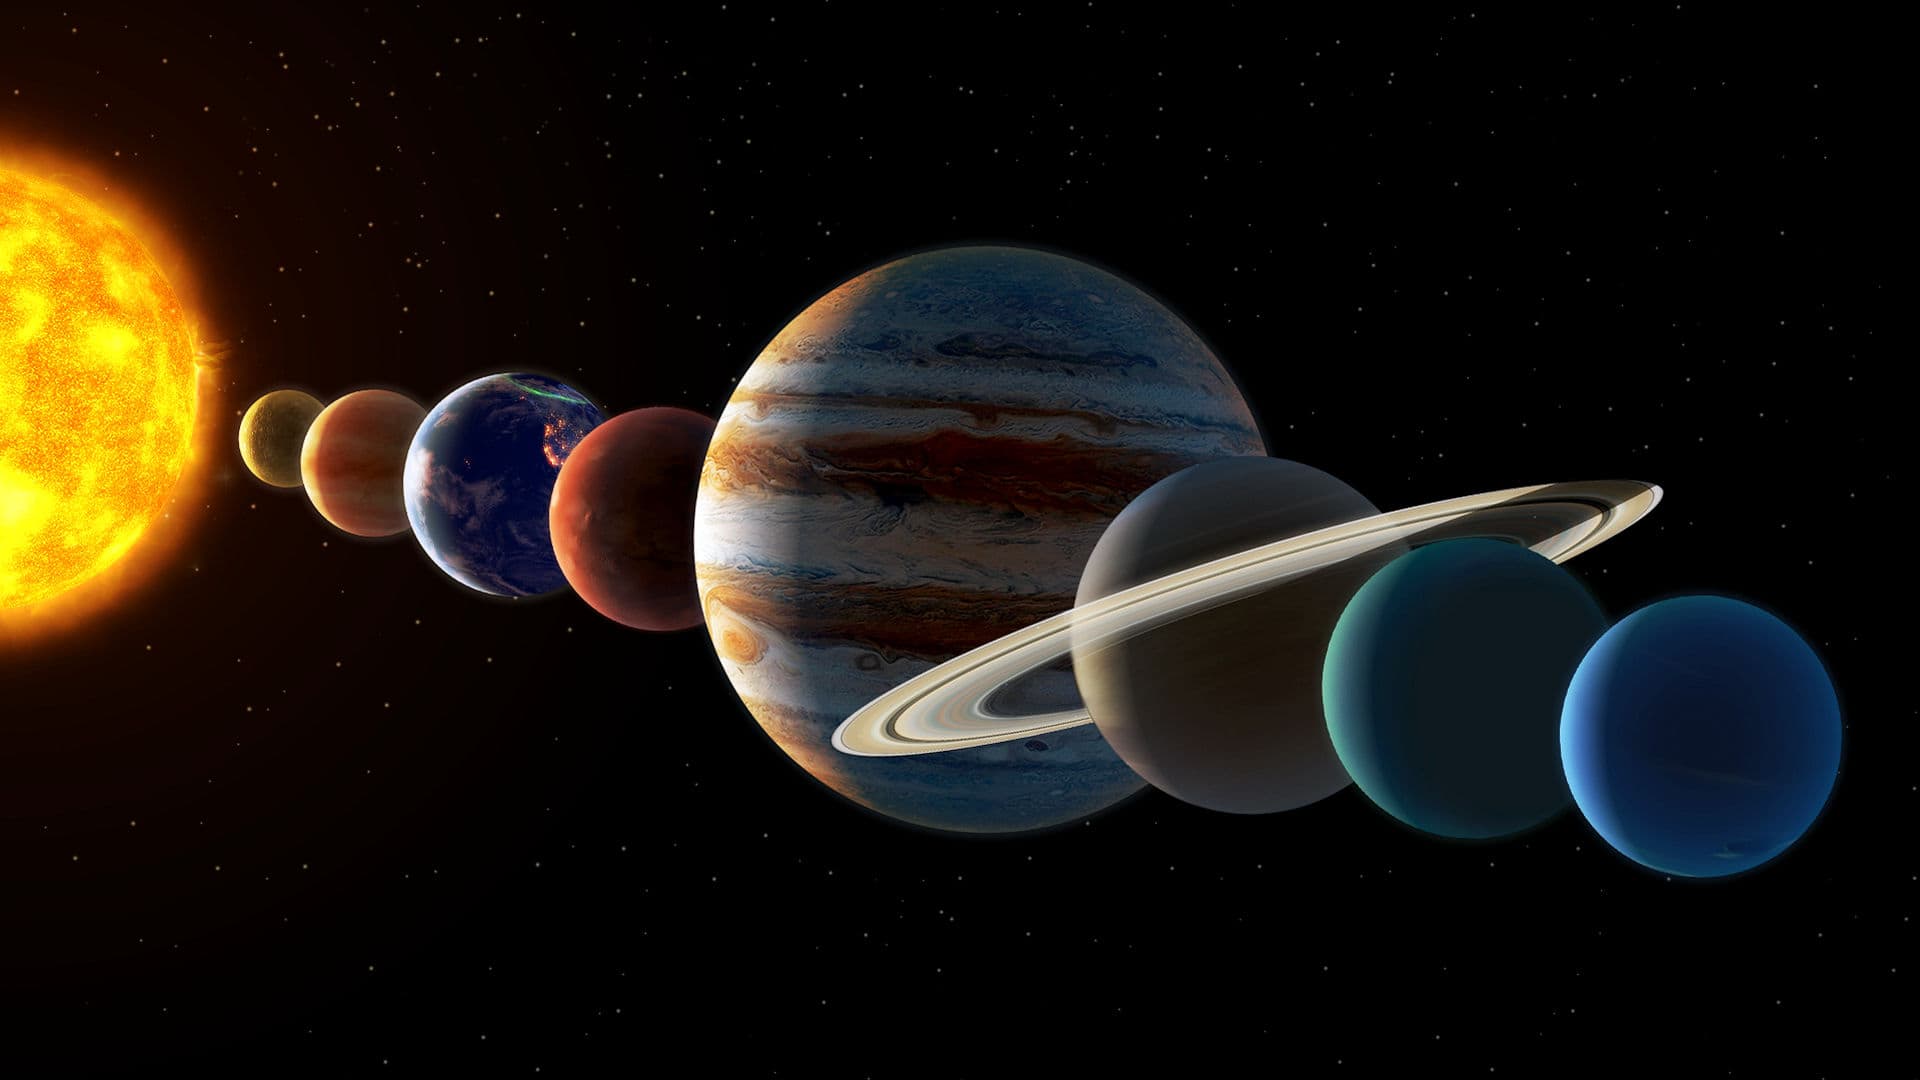 행성 정렬: 오늘 밤에 볼 수 있는 행성, 태양계 행성 정렬